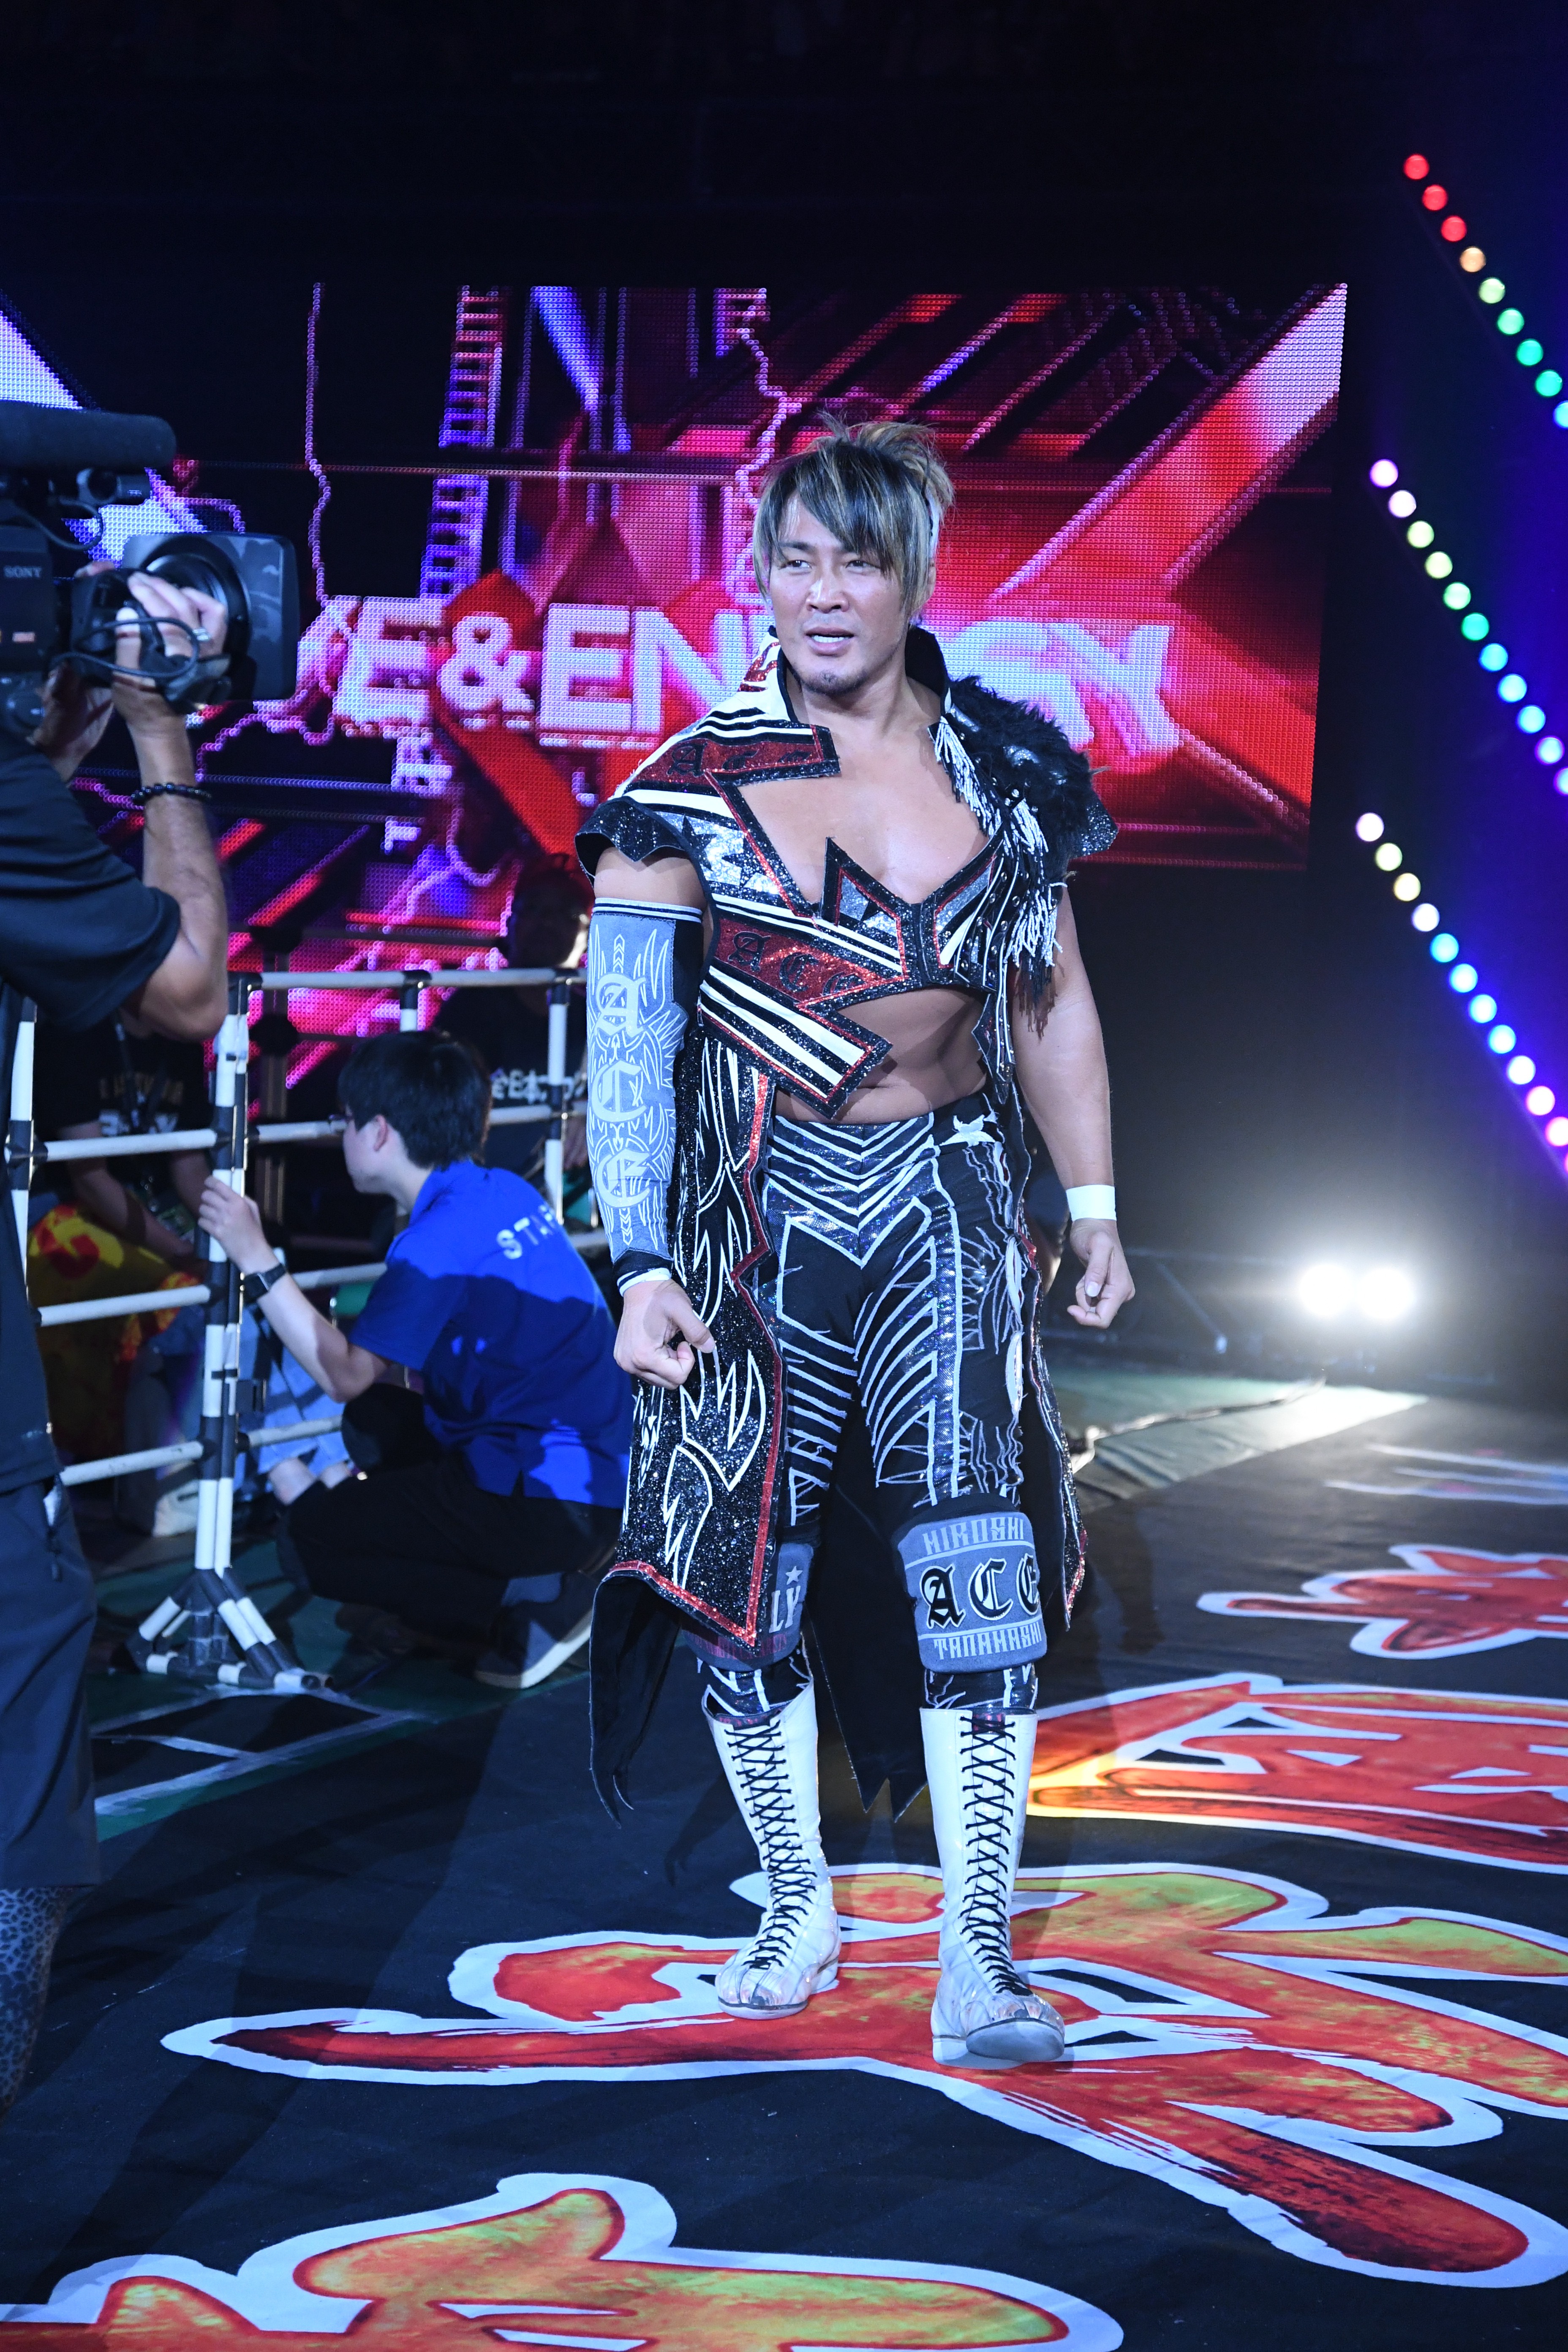 NJPW G1 Climax Finals